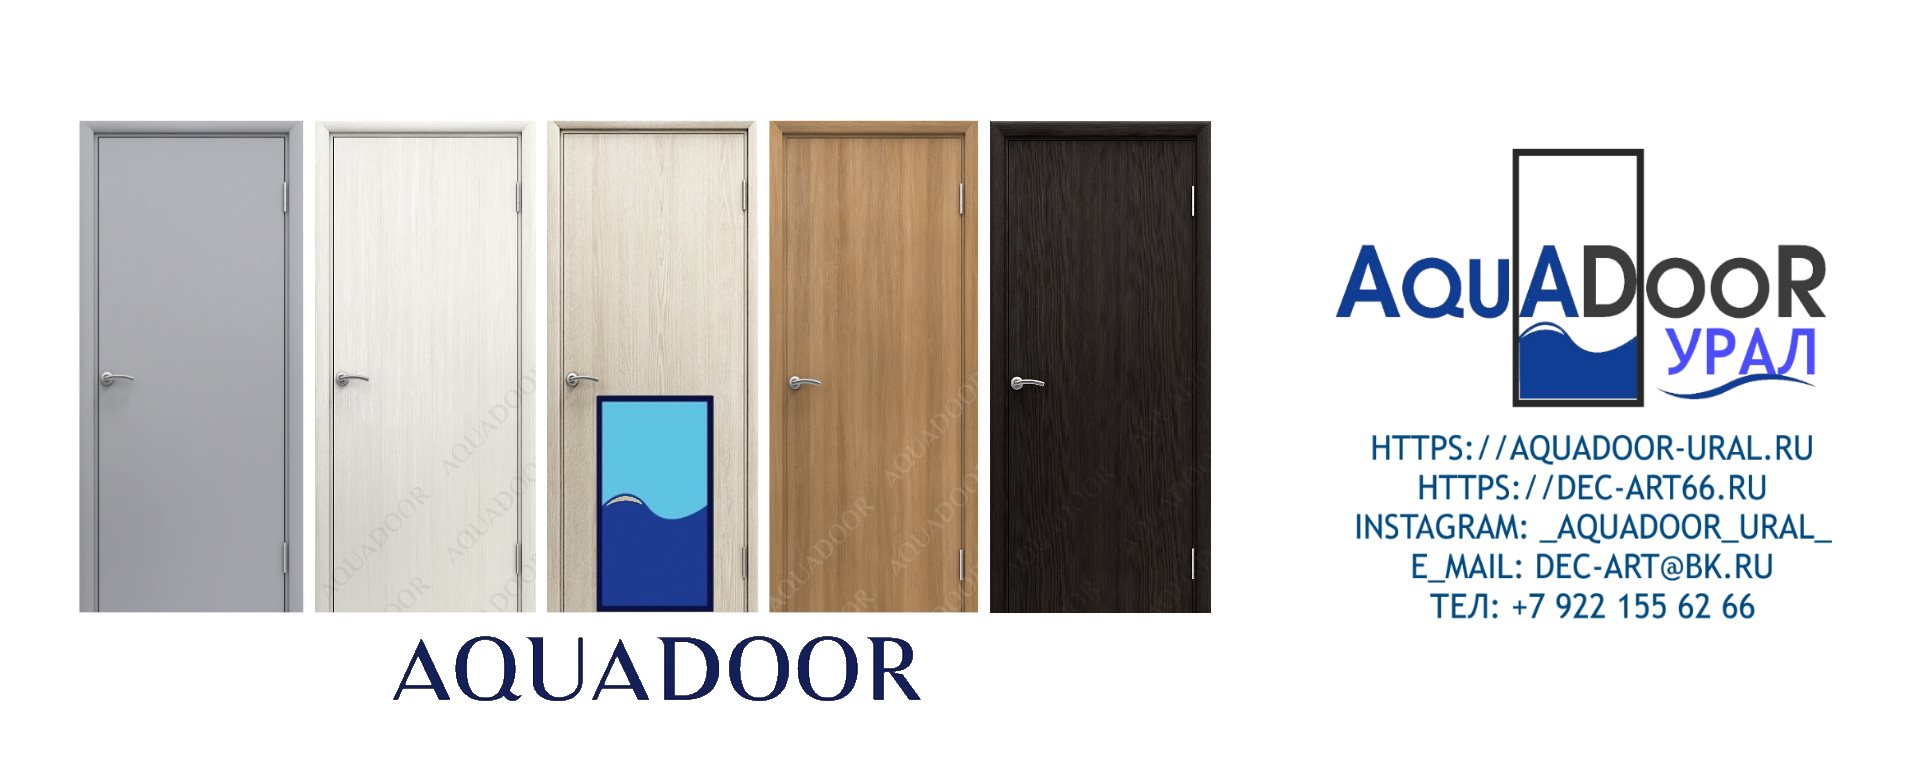 Гладкие цветные двери AQUADOOR